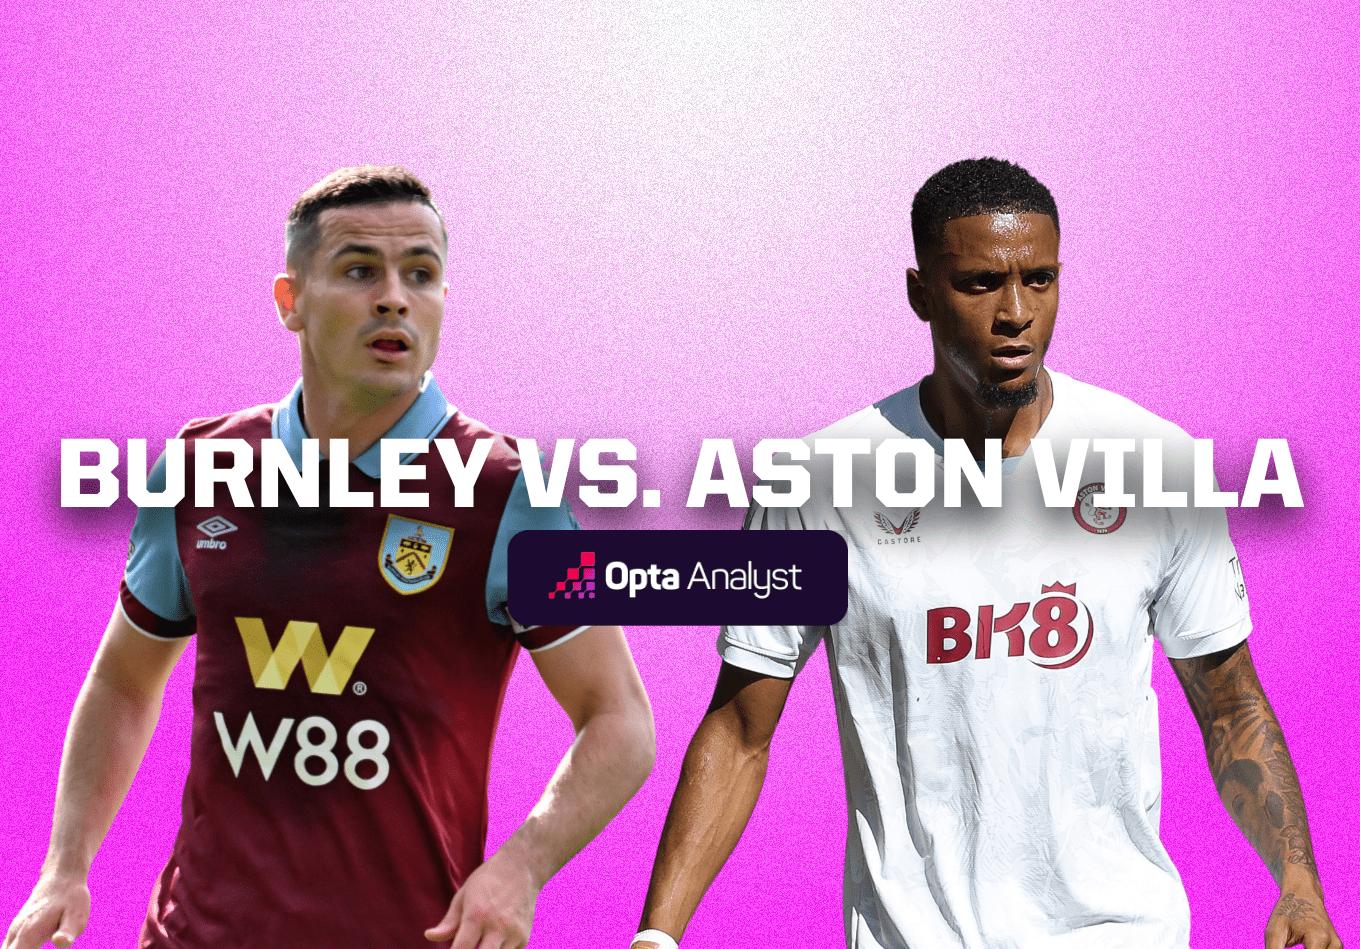 Burnley vs Aston Villa: Prediction and Preview